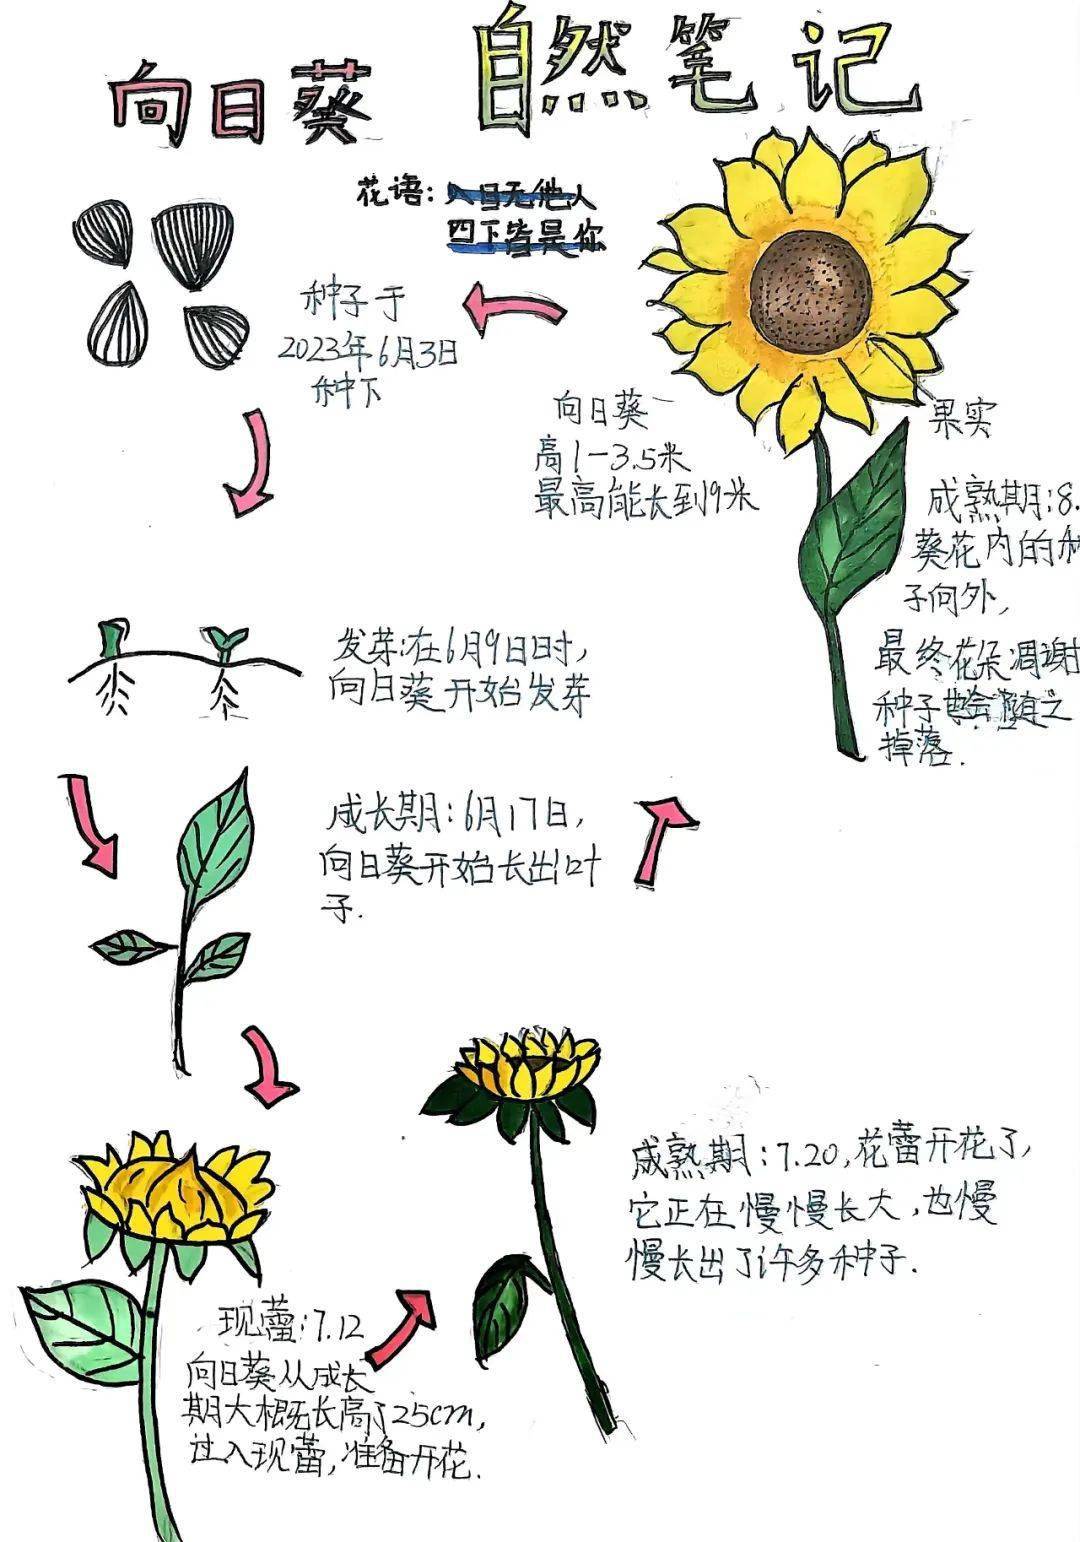 自然笔记植物 简易图片